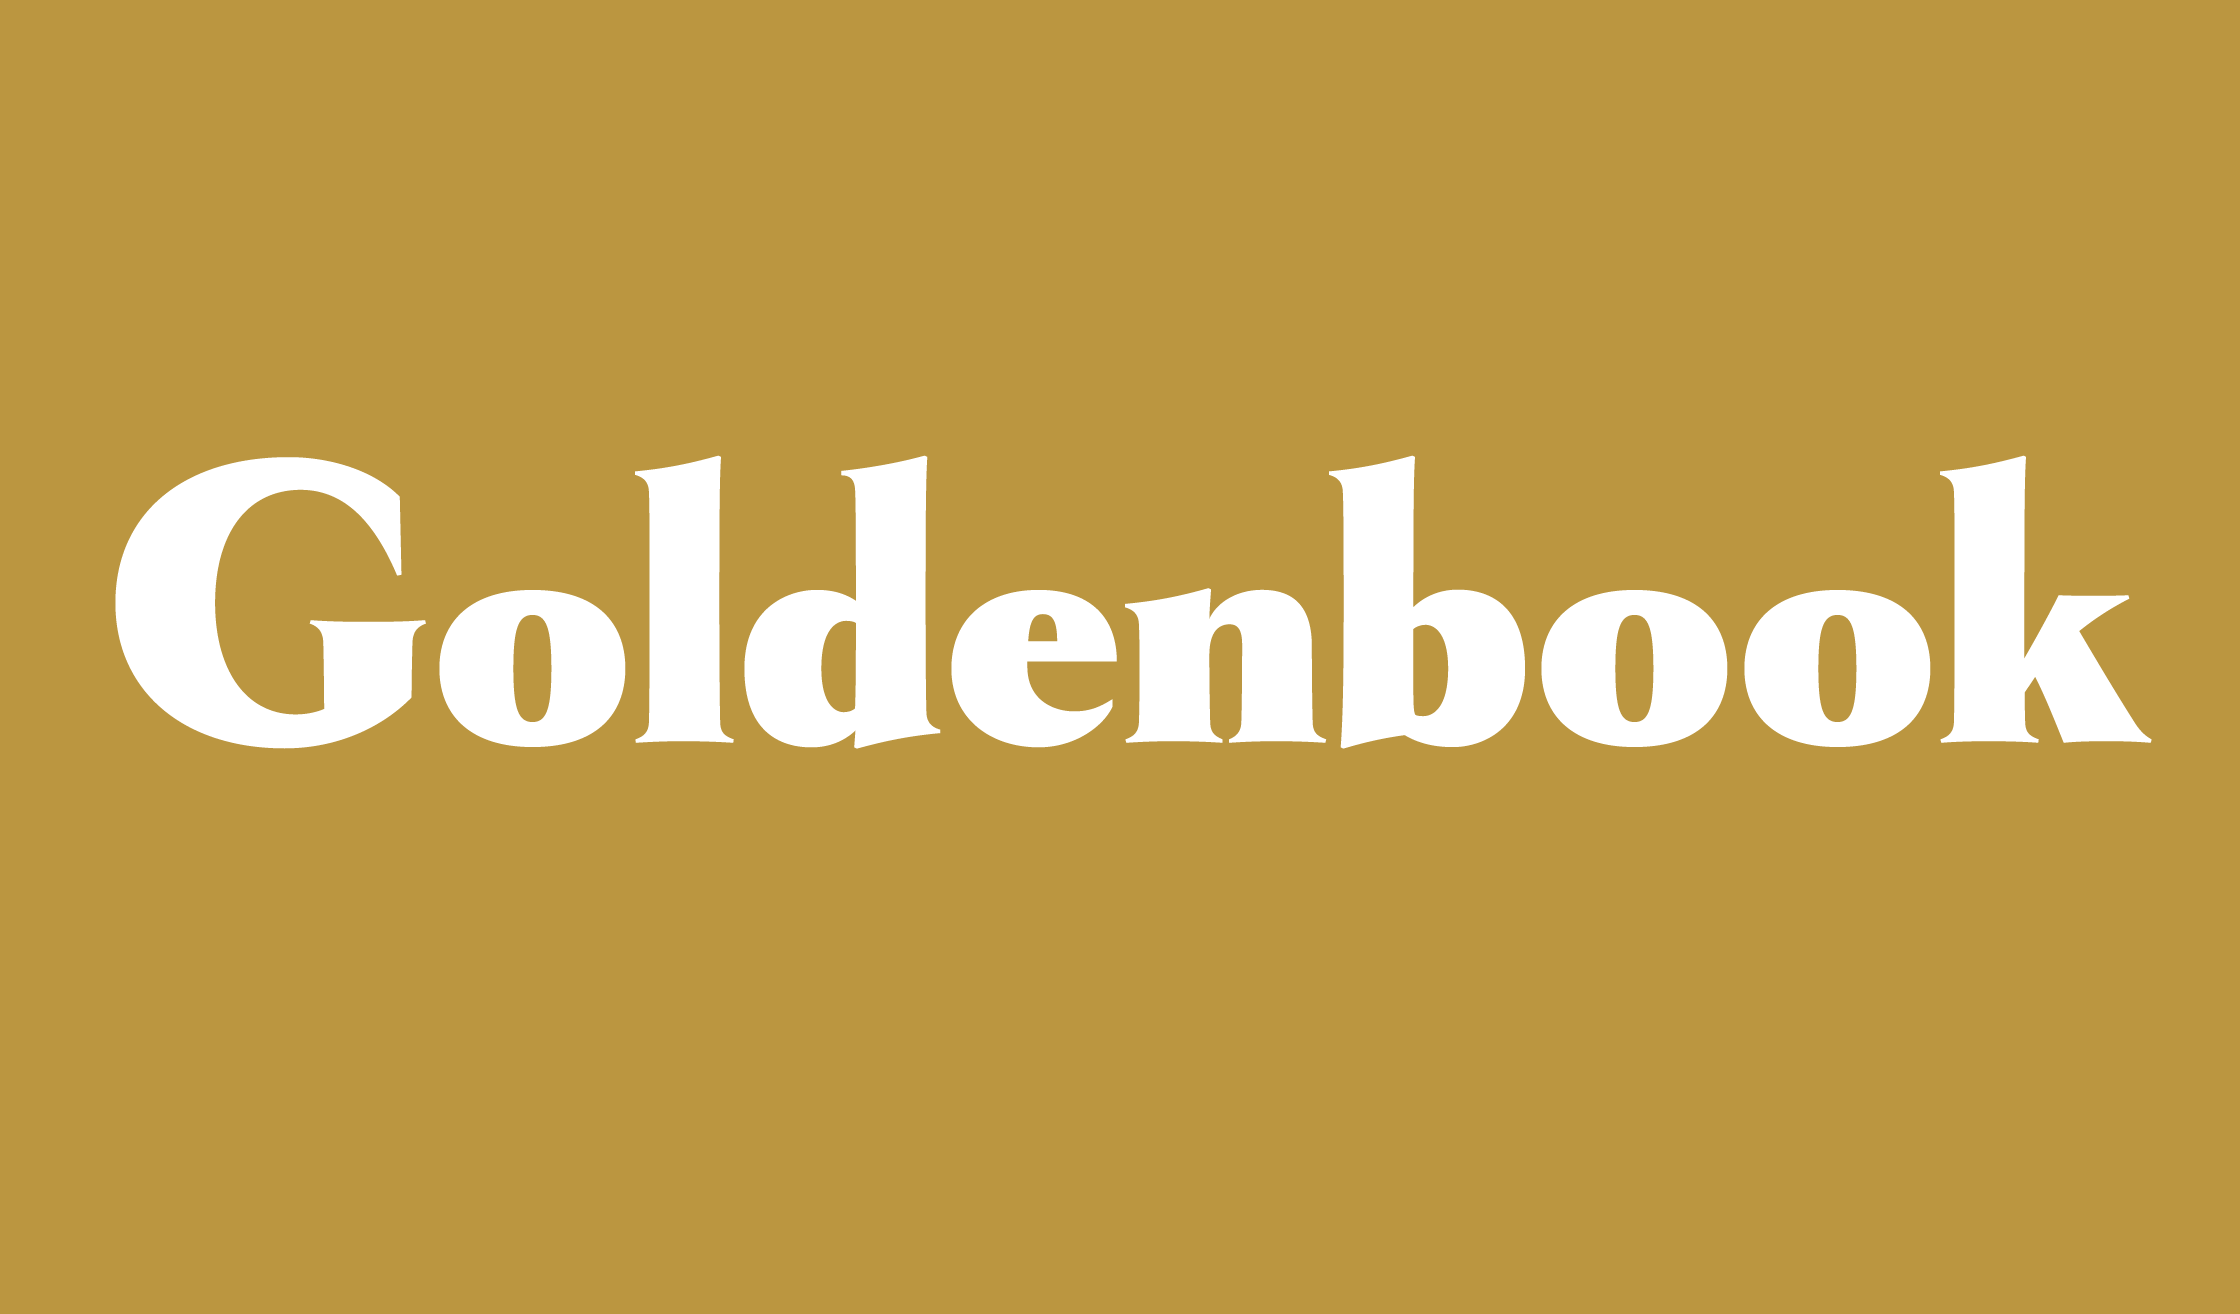 Goldenbook_banner_name_2240.png